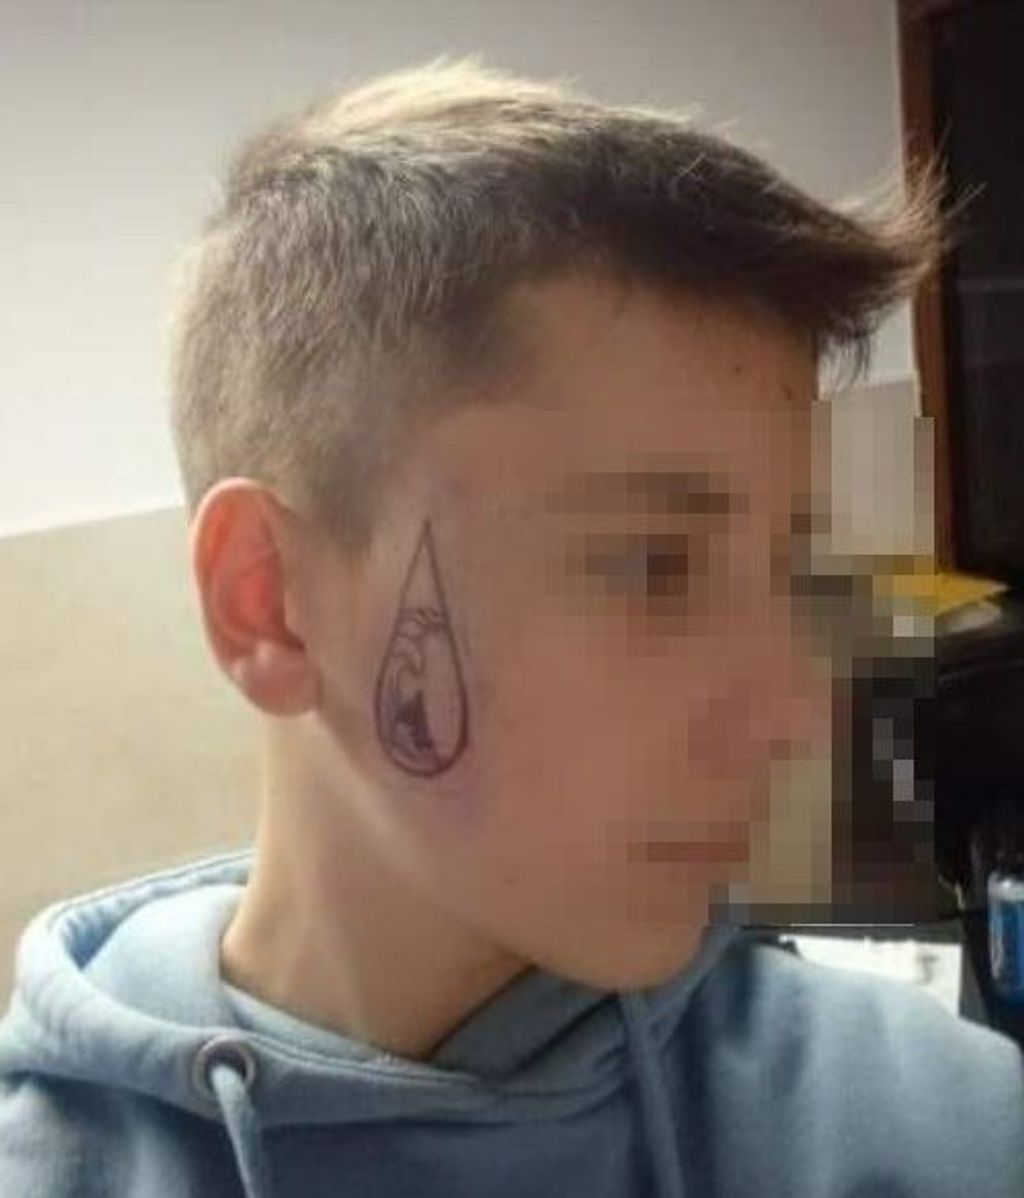 Un joven supuestamente se tatúa la cara tras un mensaje del 'freestyler' Gazir